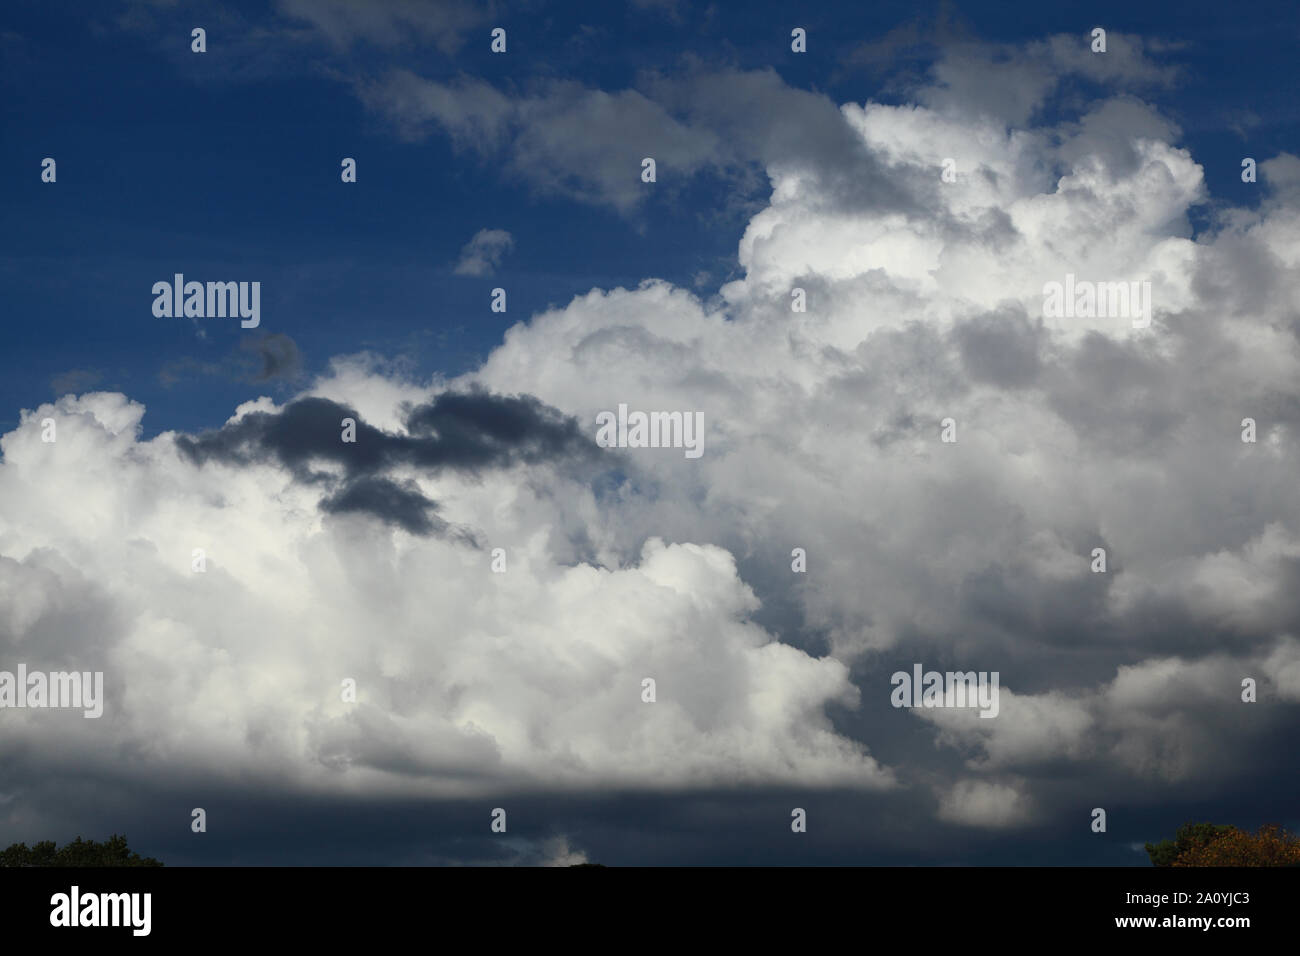 Blanc, gris, noir, nuage, nuages, turbulent, turbulence, ciel bleu, météo Banque D'Images